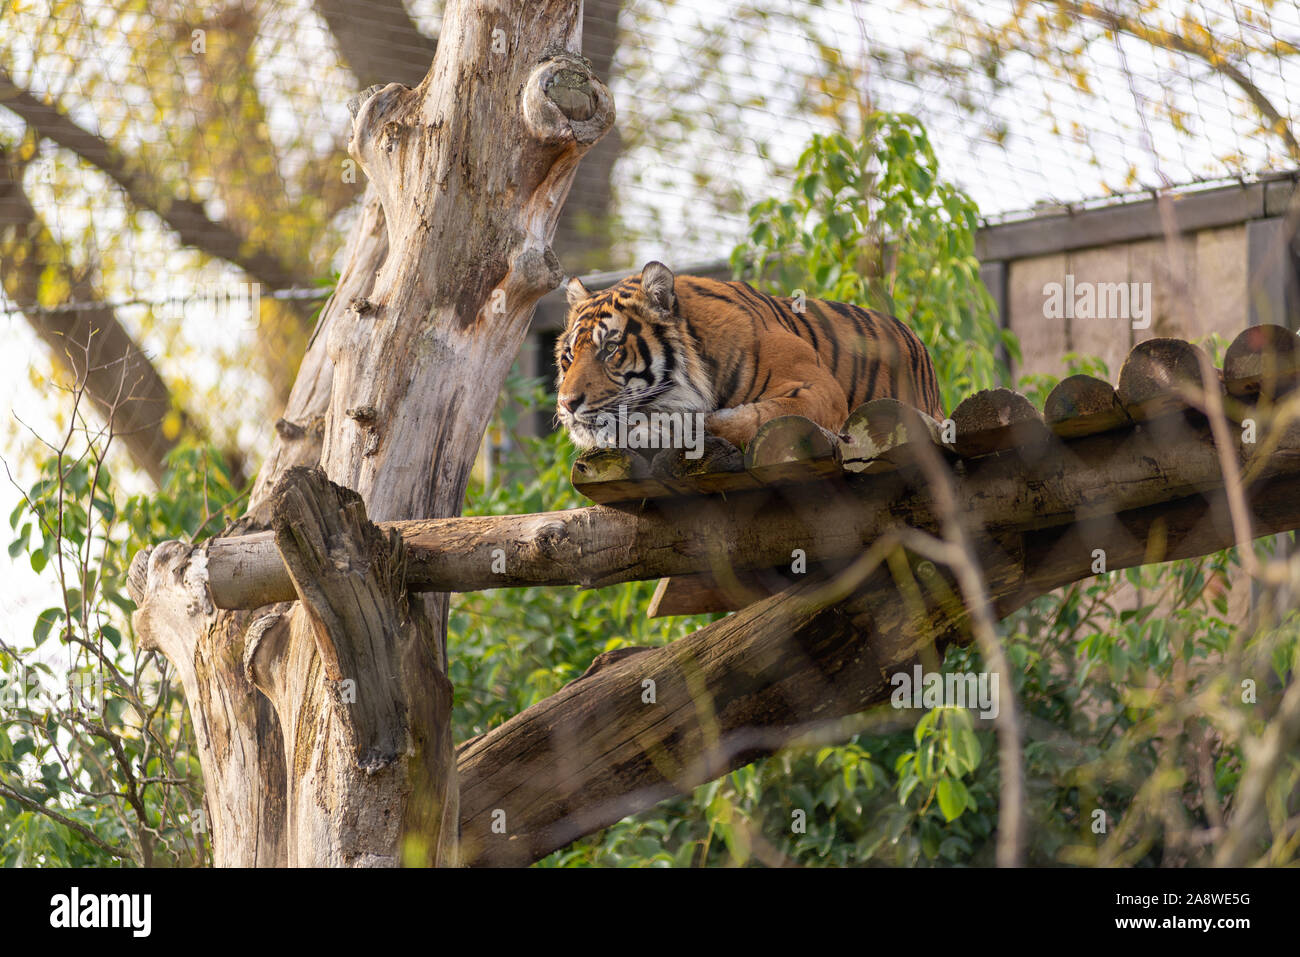 Sumatran tiger at London Zoo Stock Photo